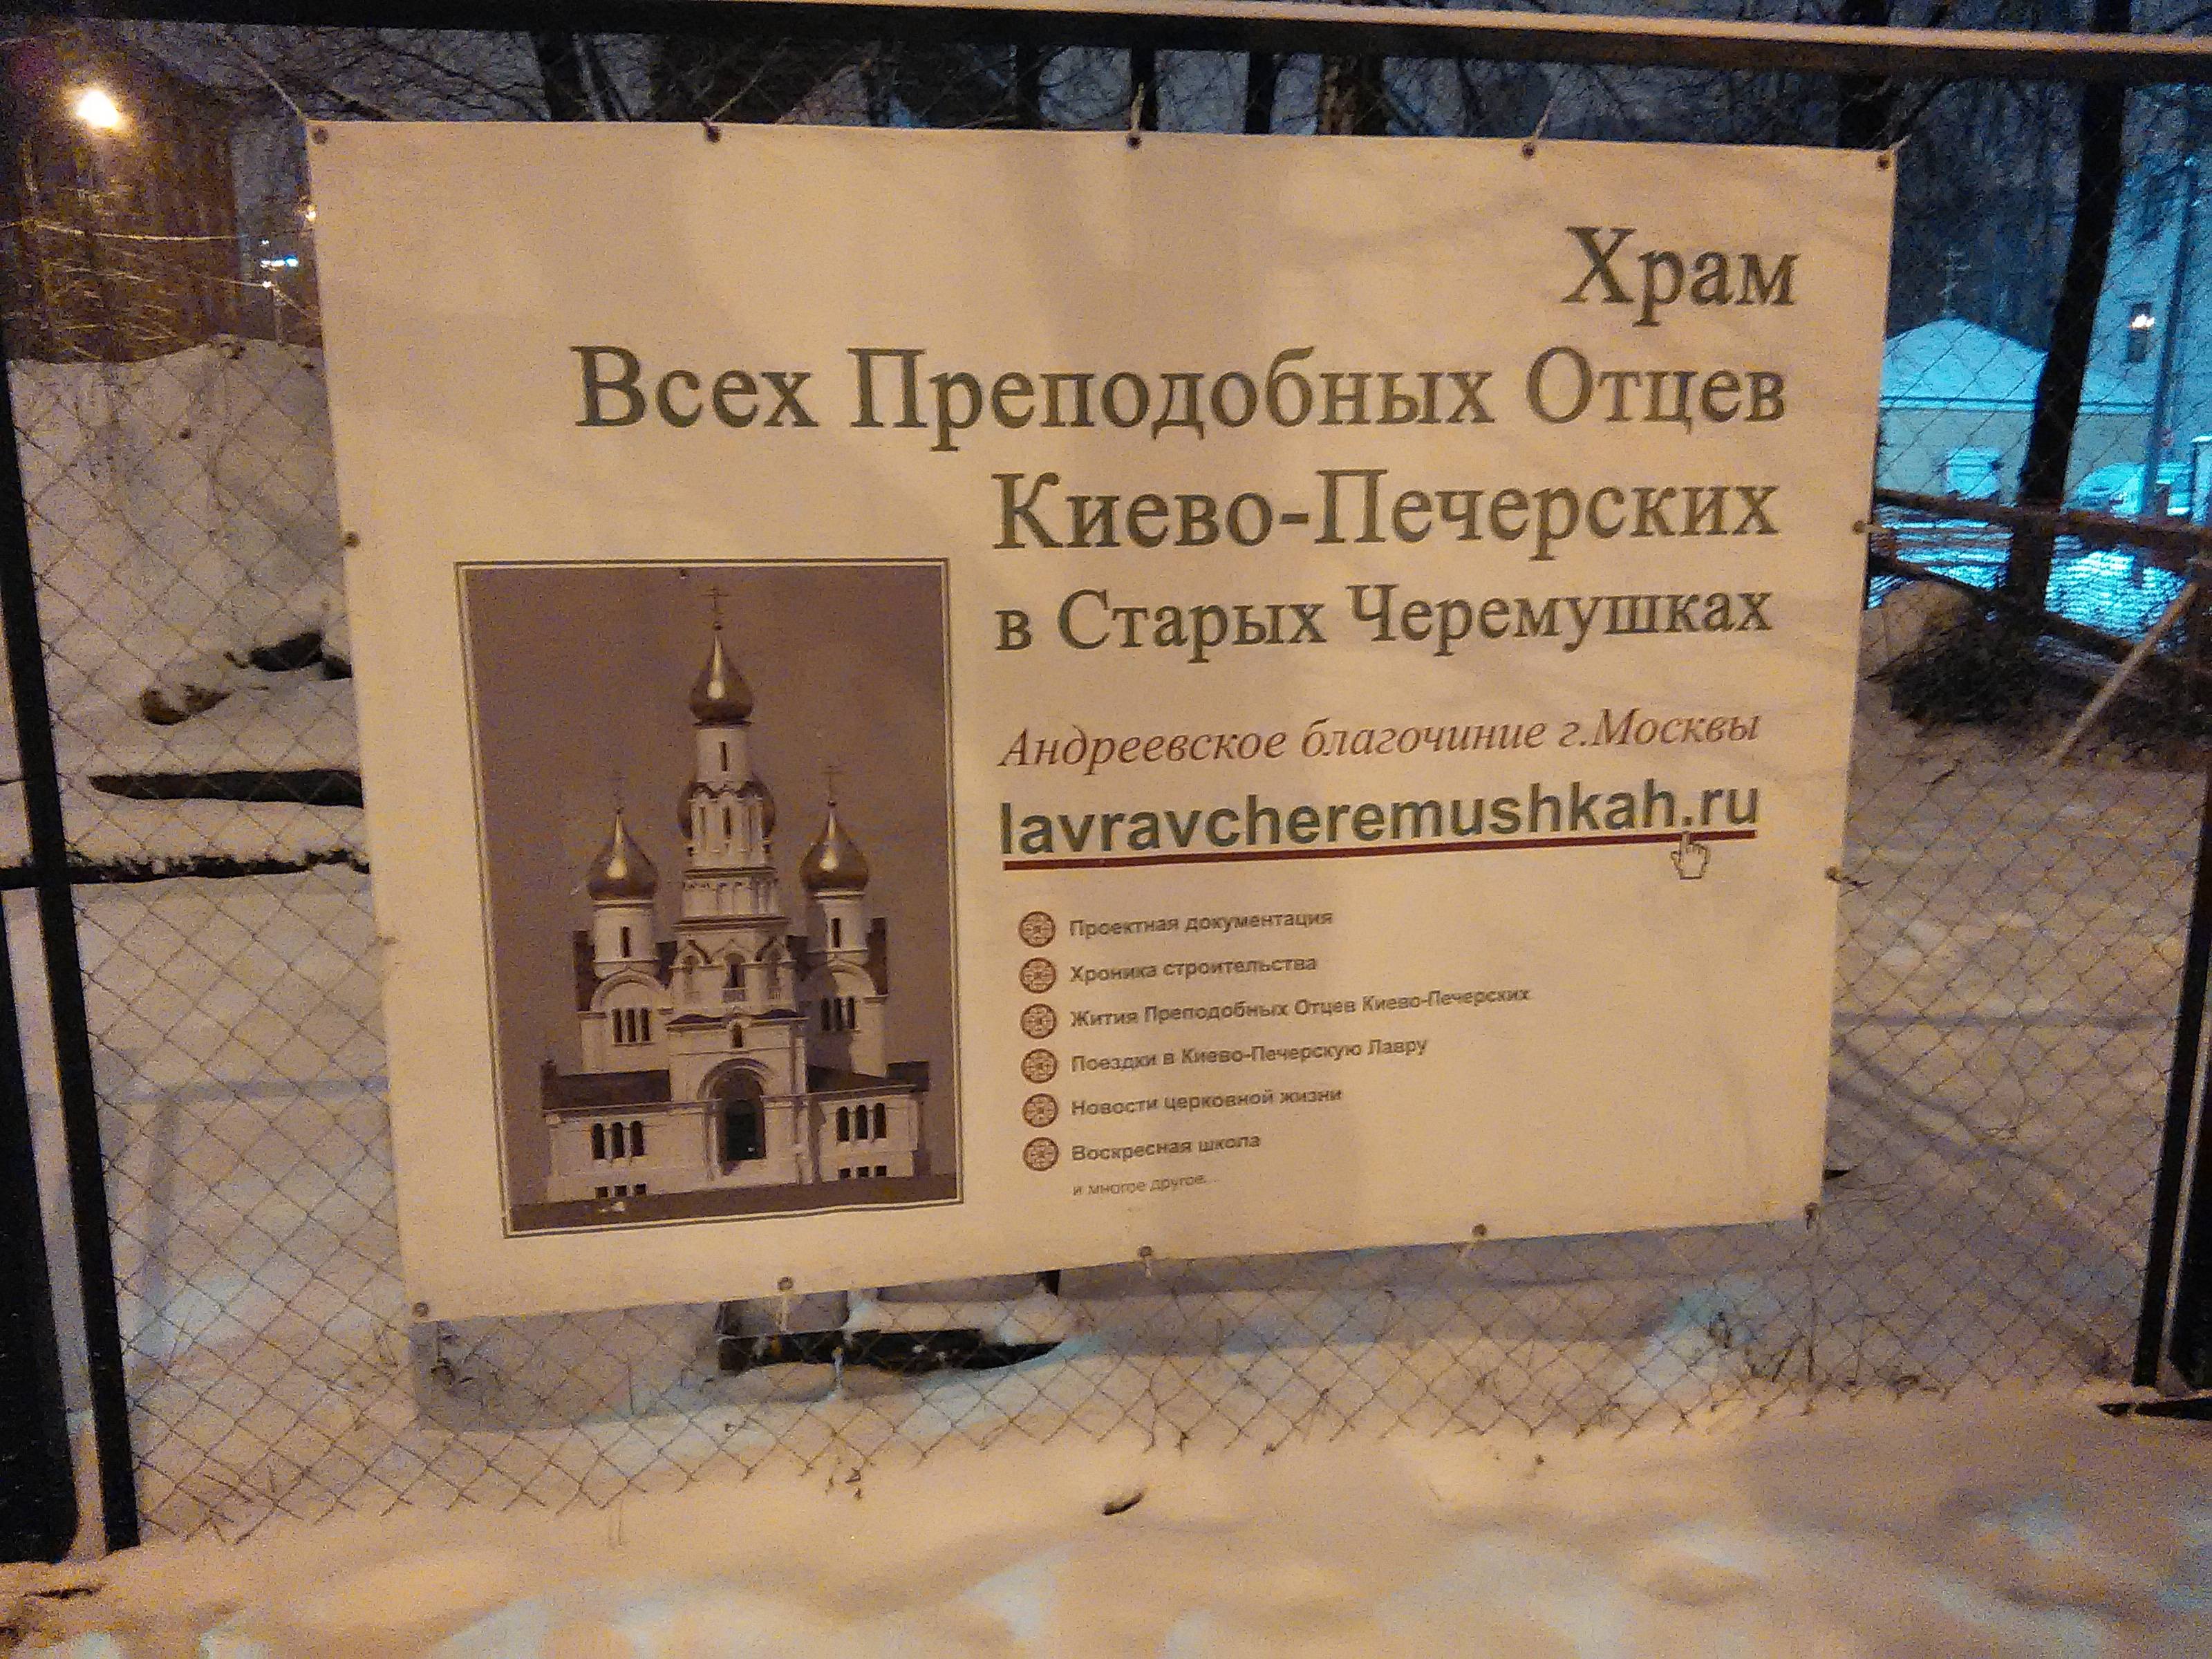 Храм в Черемушках расписание апрель 2022 отцов Киево-Печерских.